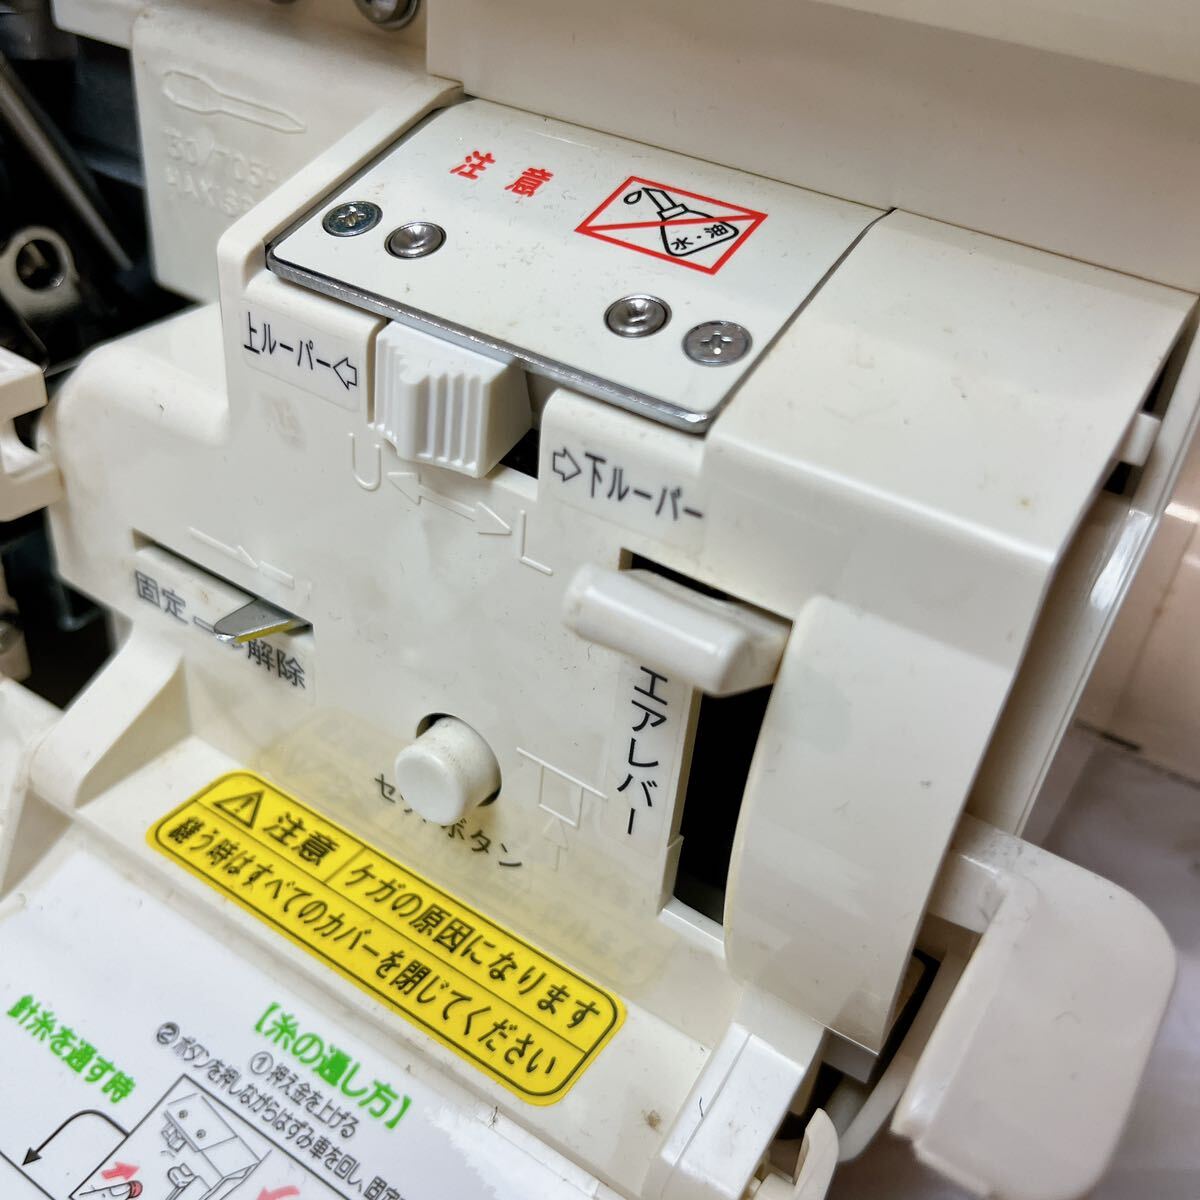 [ Junk ] электризация возможно baby lock baby блокировка швейная машинка с оверлоком .. человек BL517